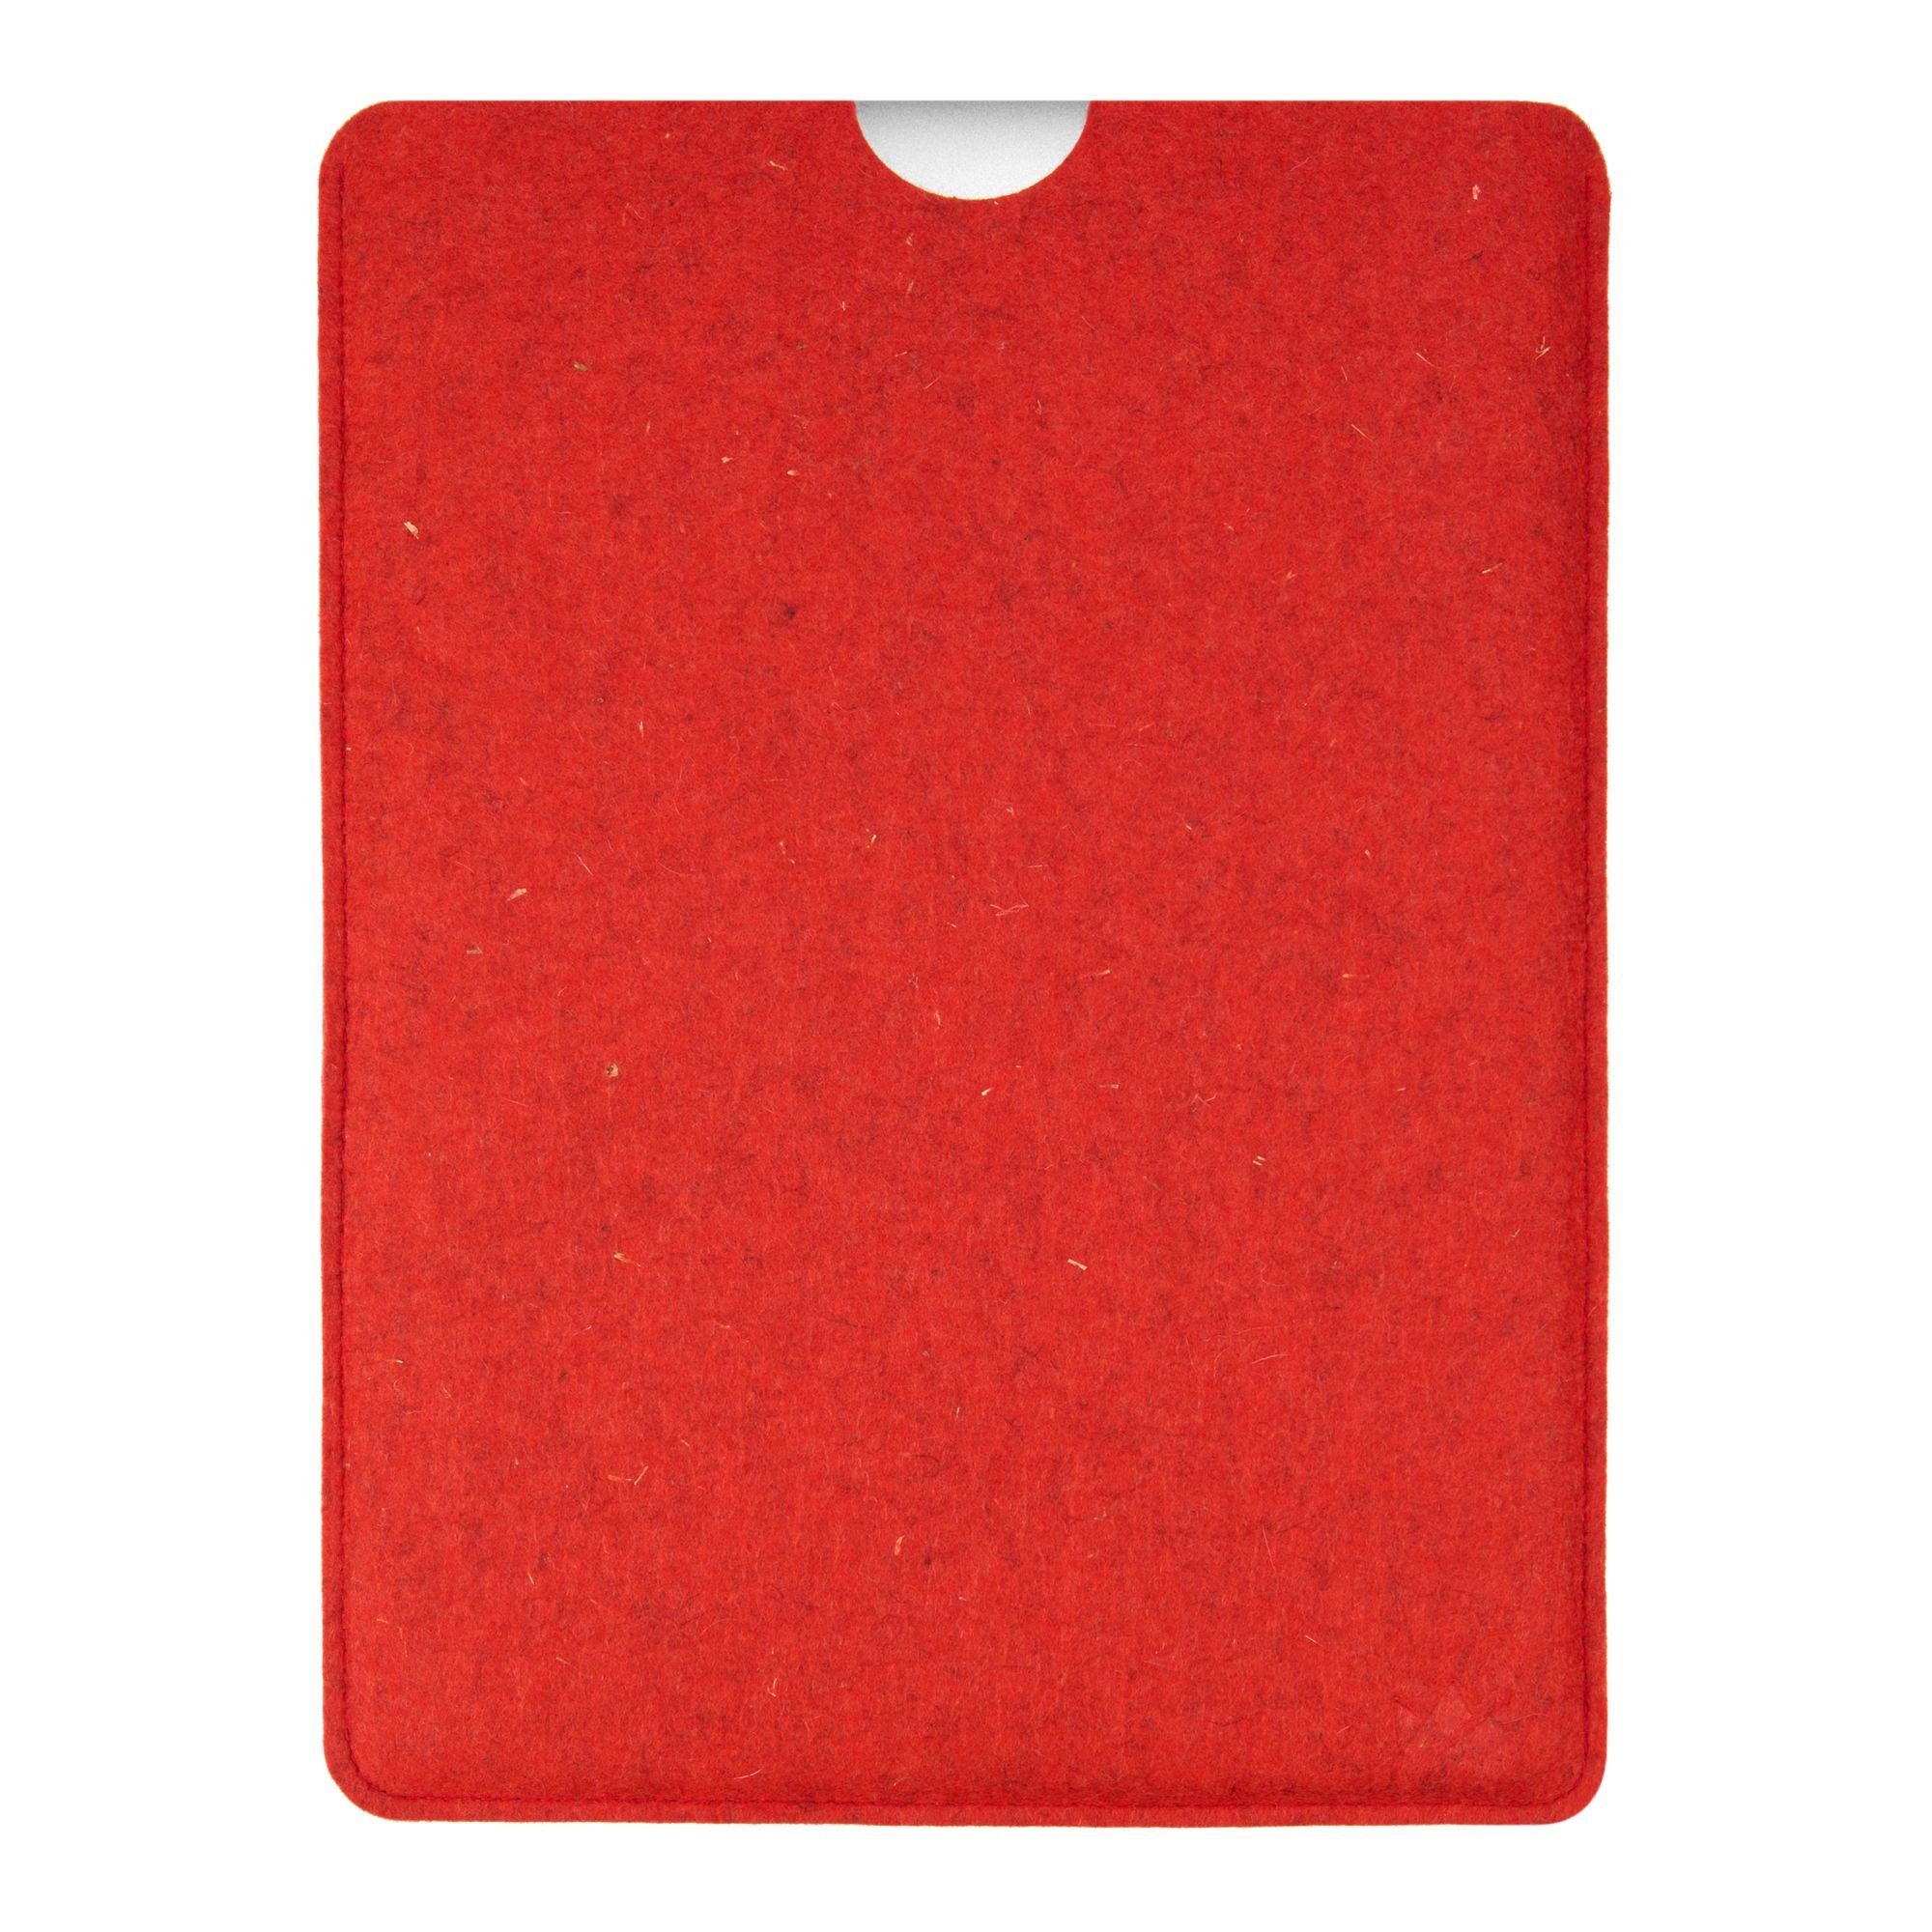 CoverKingz Laptoptasche Hülle Germany in Handmade Pro Apple MacBook Rot Made Tasche Schutz 100% 14" Zoll Filz Schurwolle, für Case